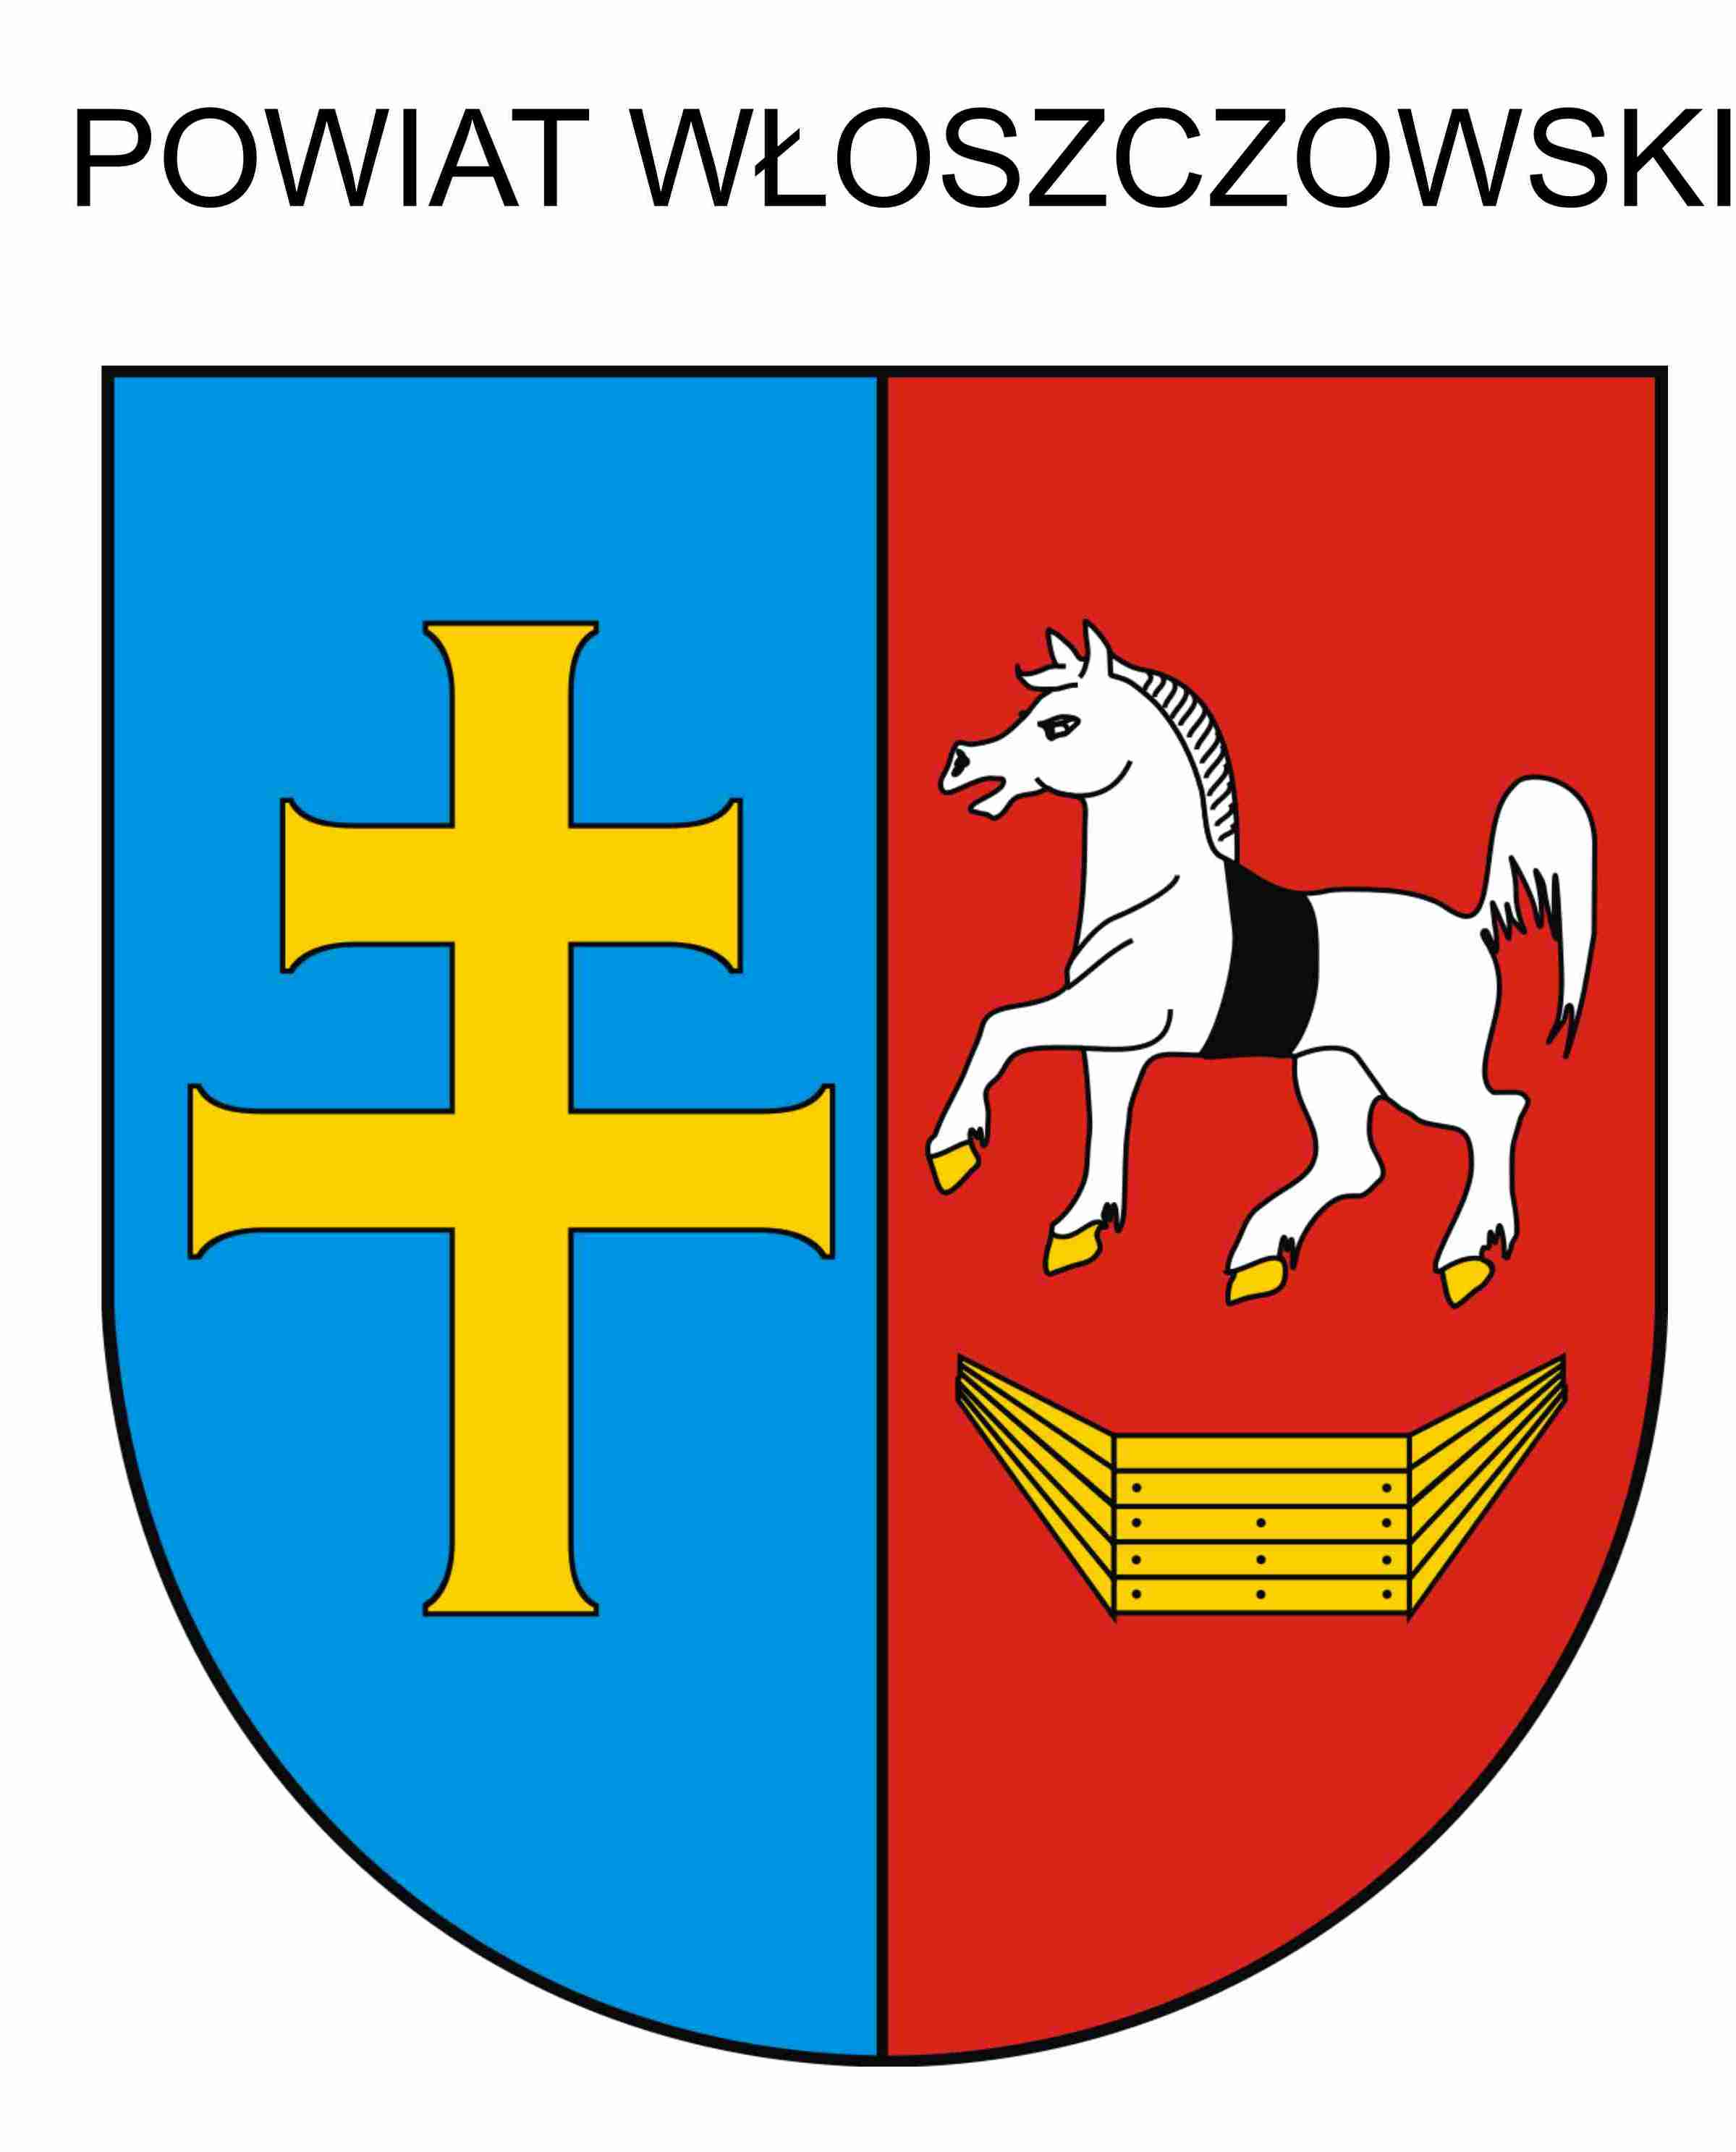 Powiat włoszczowski